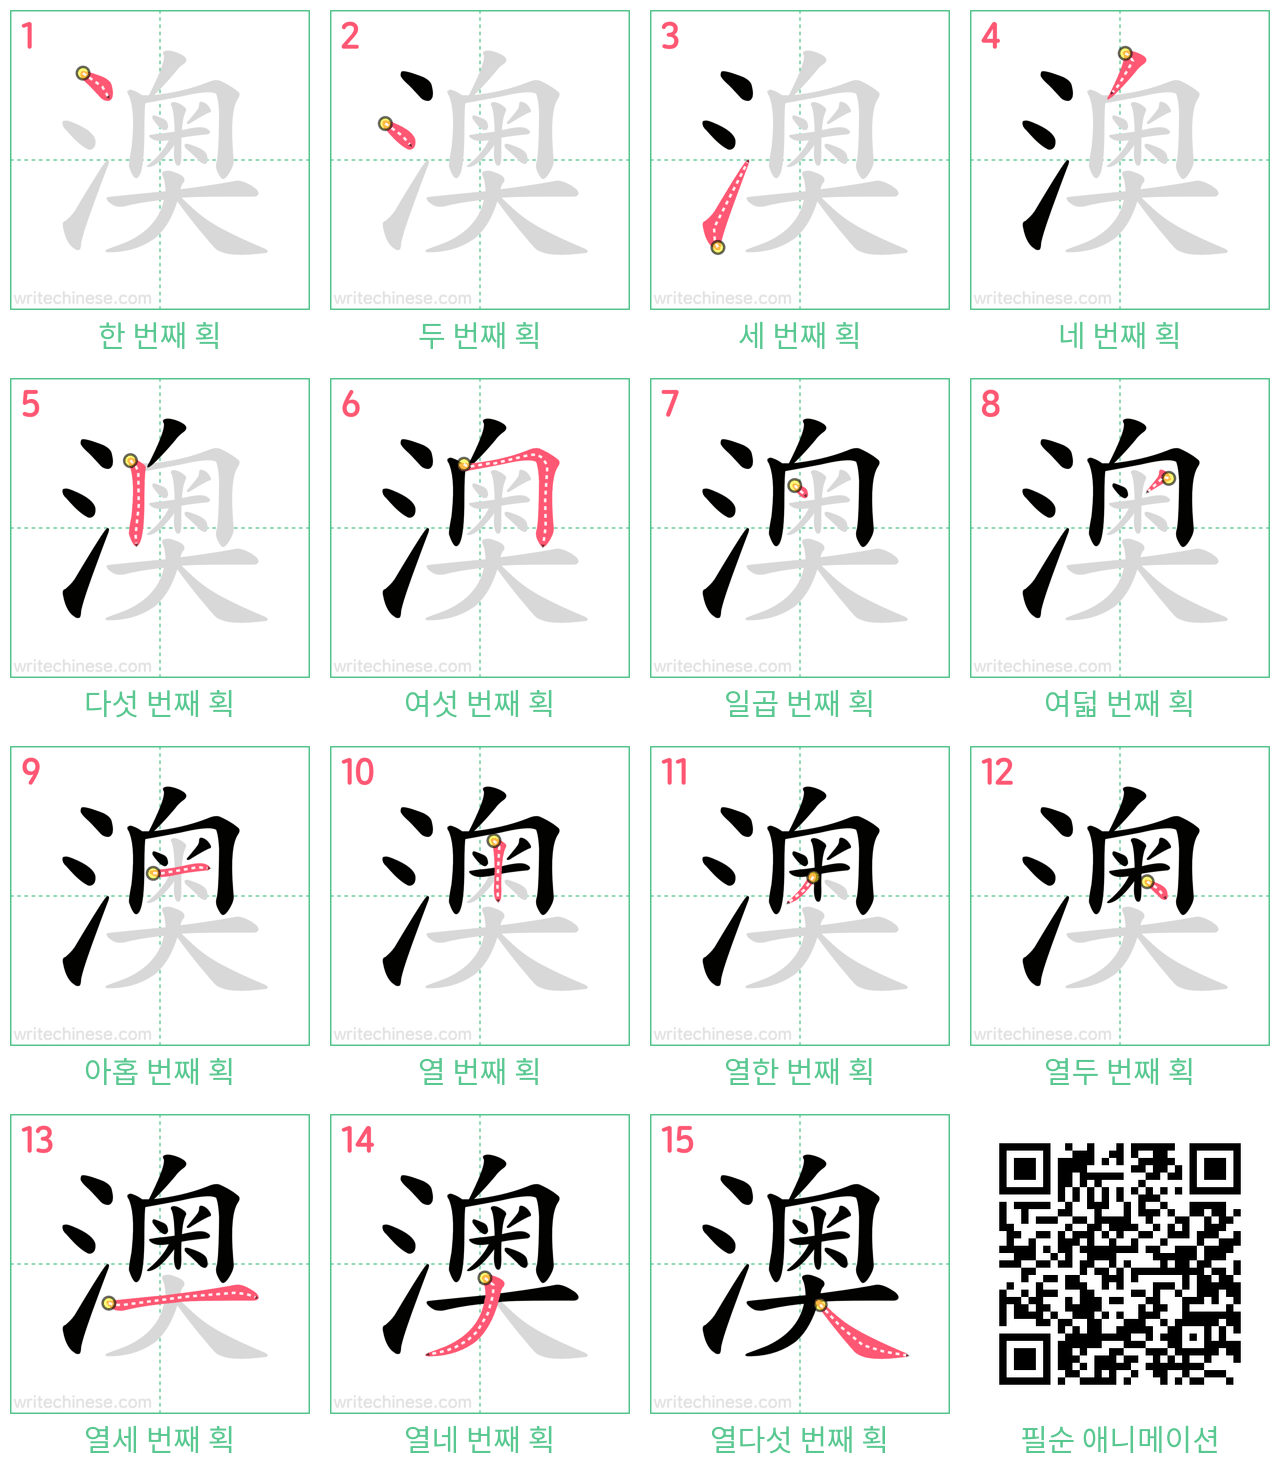 澳 step-by-step stroke order diagrams